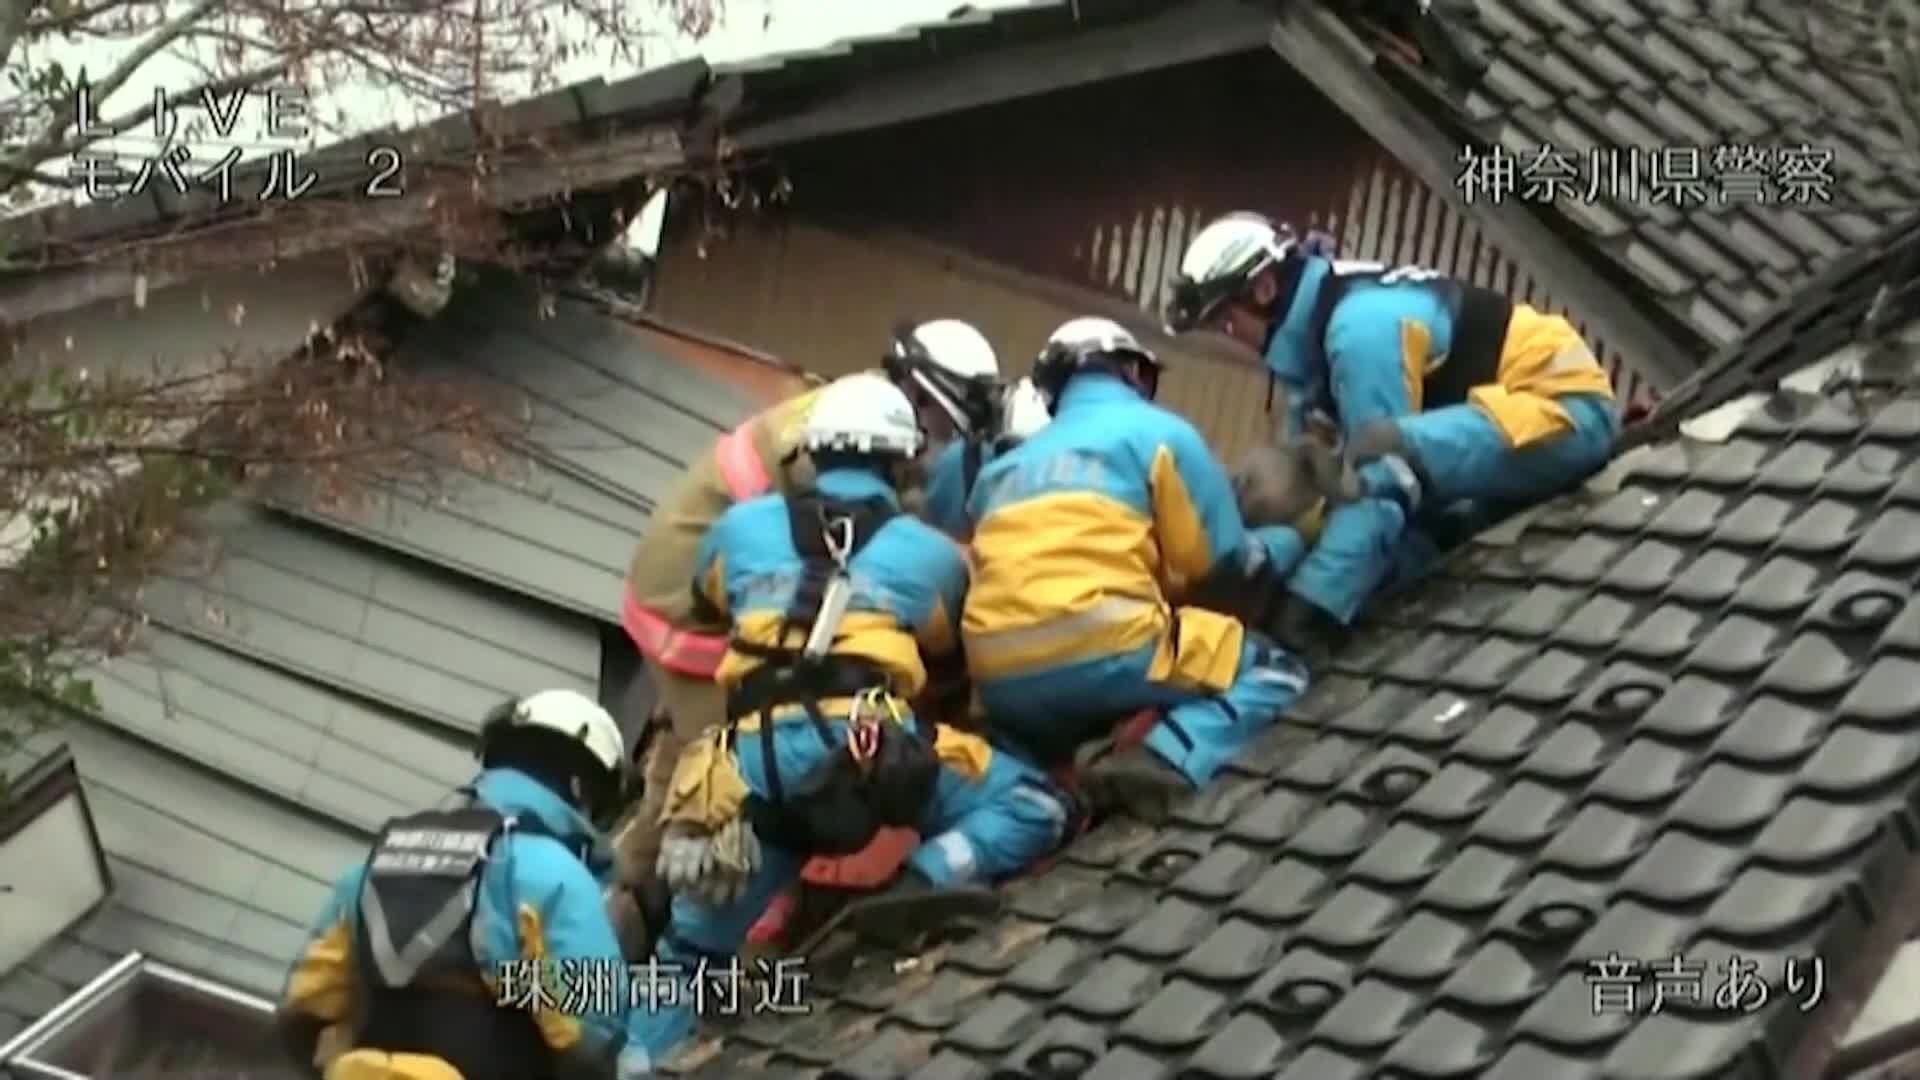 СЛЕД 3 ДНИ: Японски спасителен екип извади мъж от срутена сграда